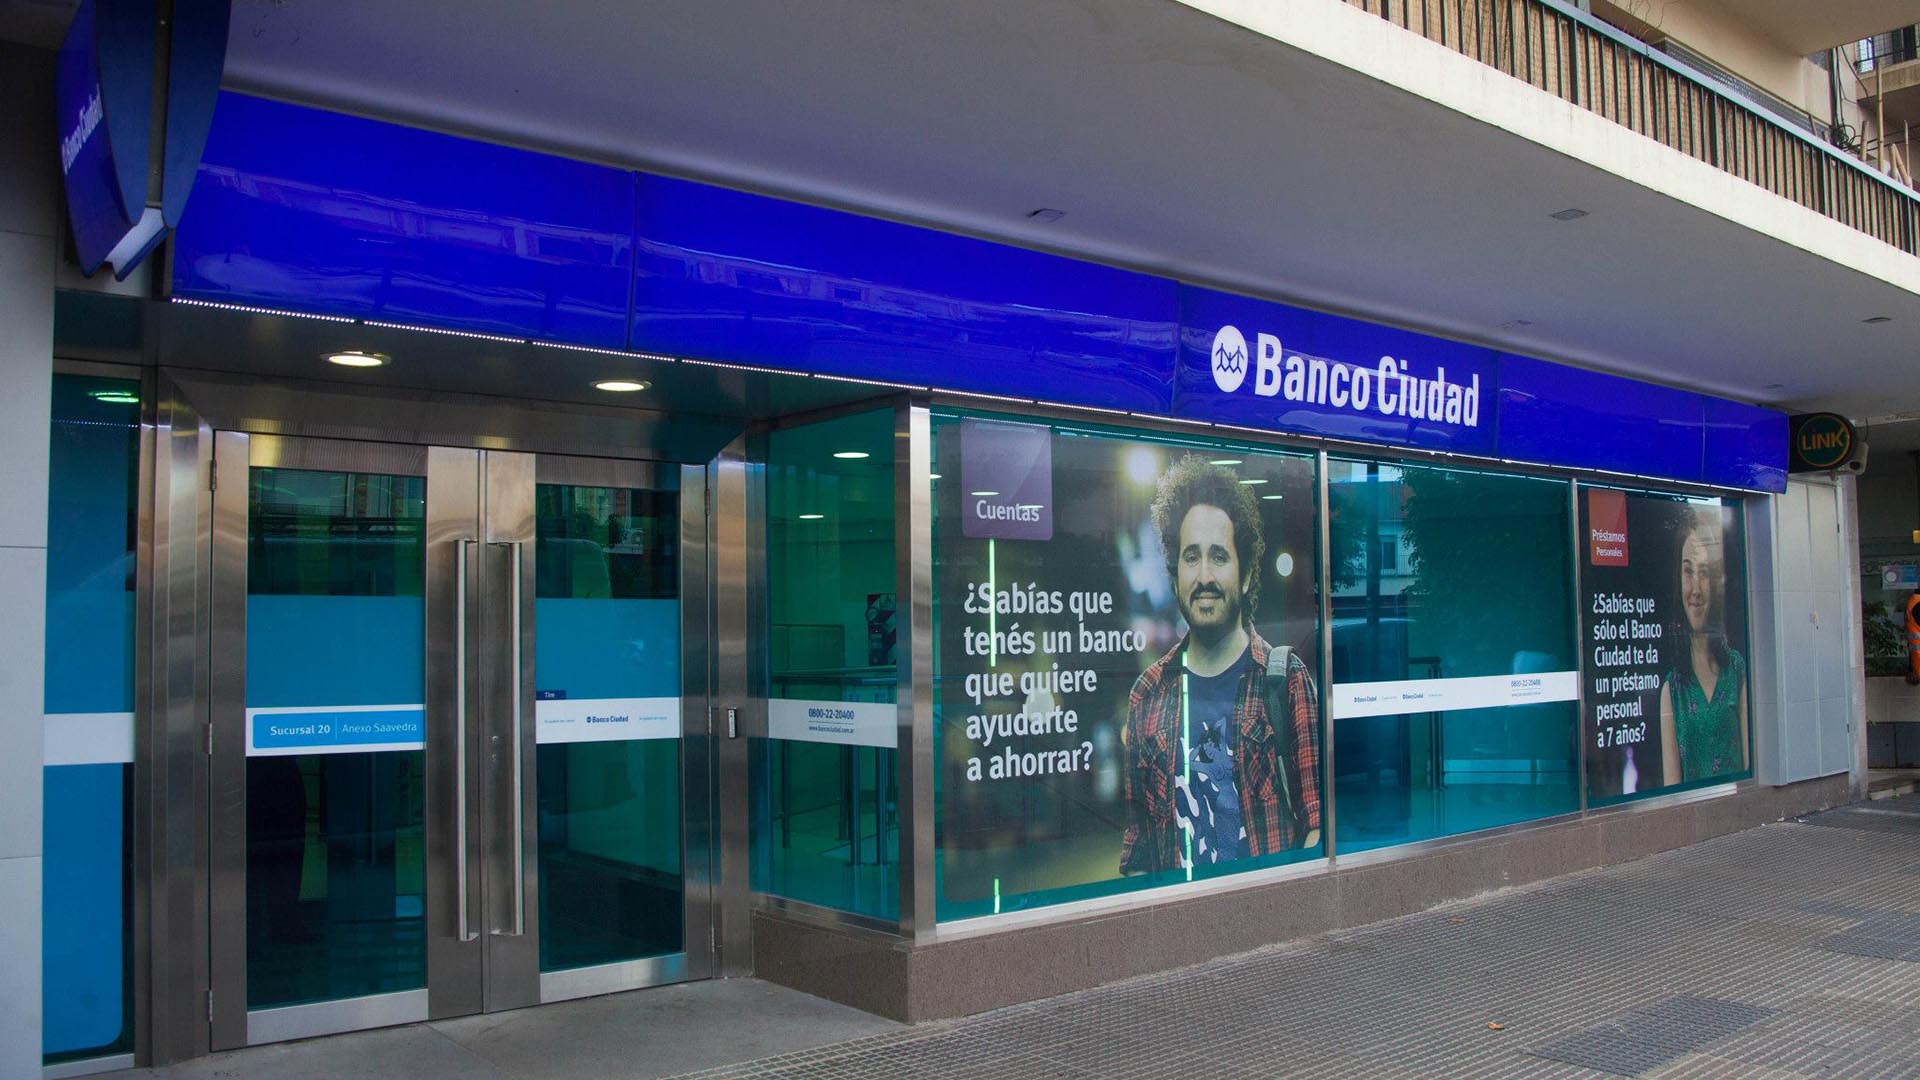 La Procuración General del Gobierno de la Ciudad de Buenos Aires lleva adelante los remates junto al banco Ciudad